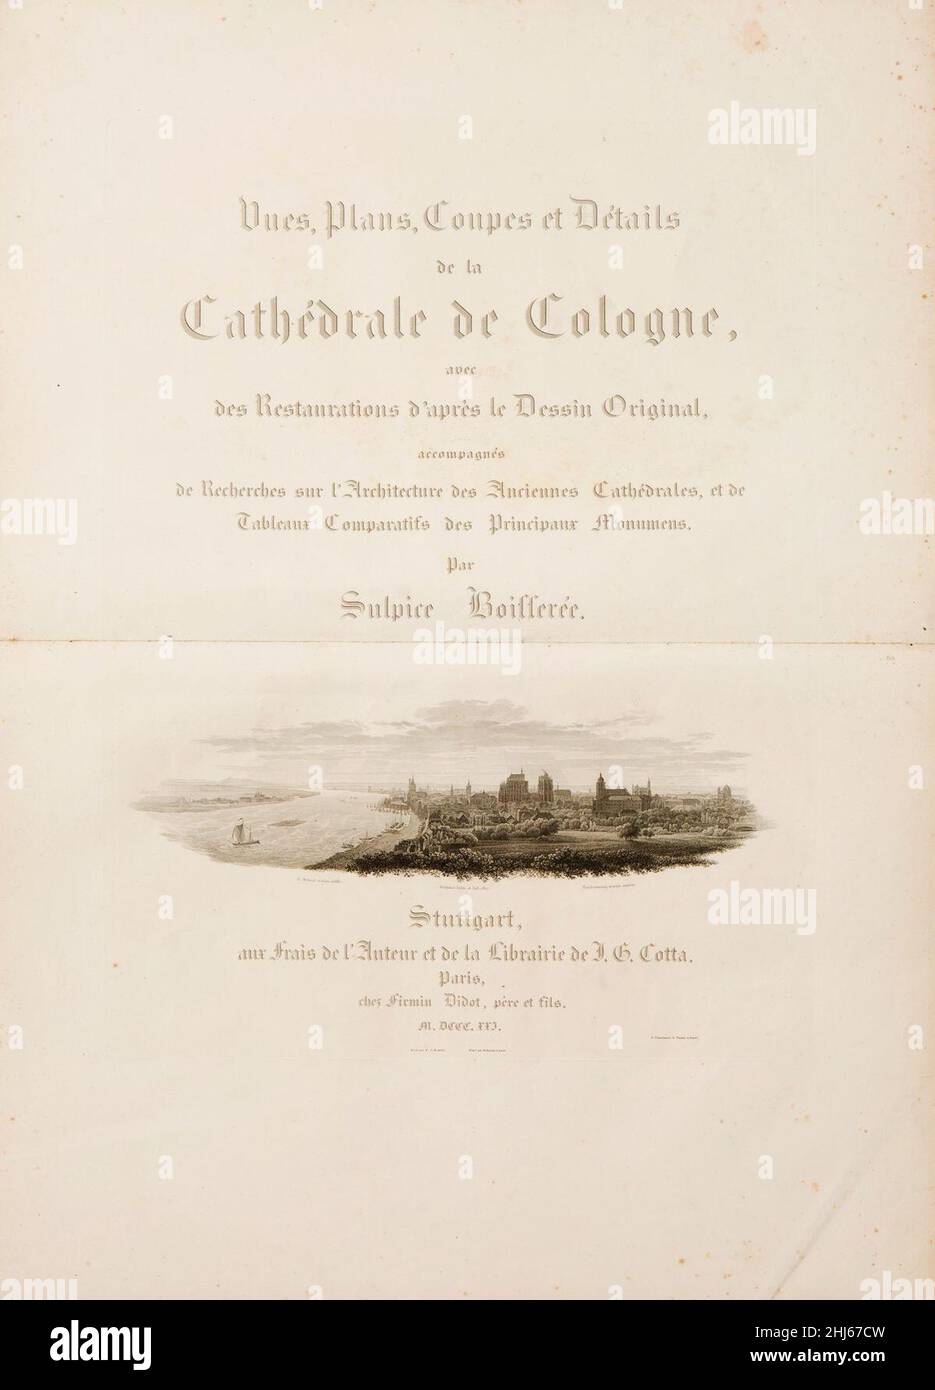 Sulpice Boisserée, Vues, Plans, Coupes et Détails de la Cathédrale de Cologne, planche I (page de titre). Stock Photo